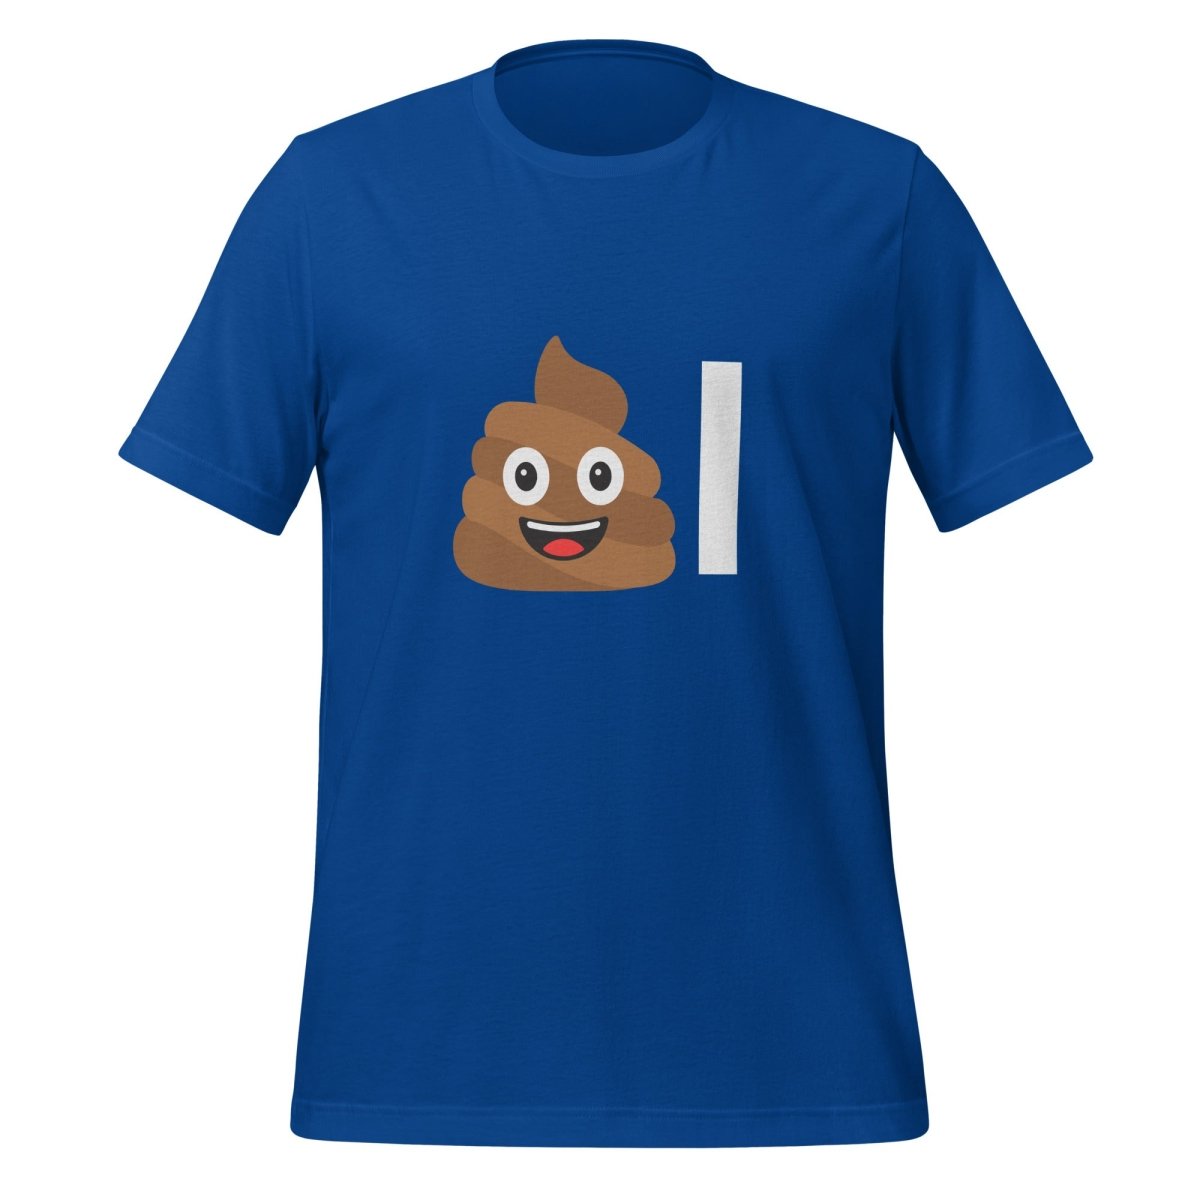 Poop Emoji AI T - Shirt (unisex) - True Royal - AI Store